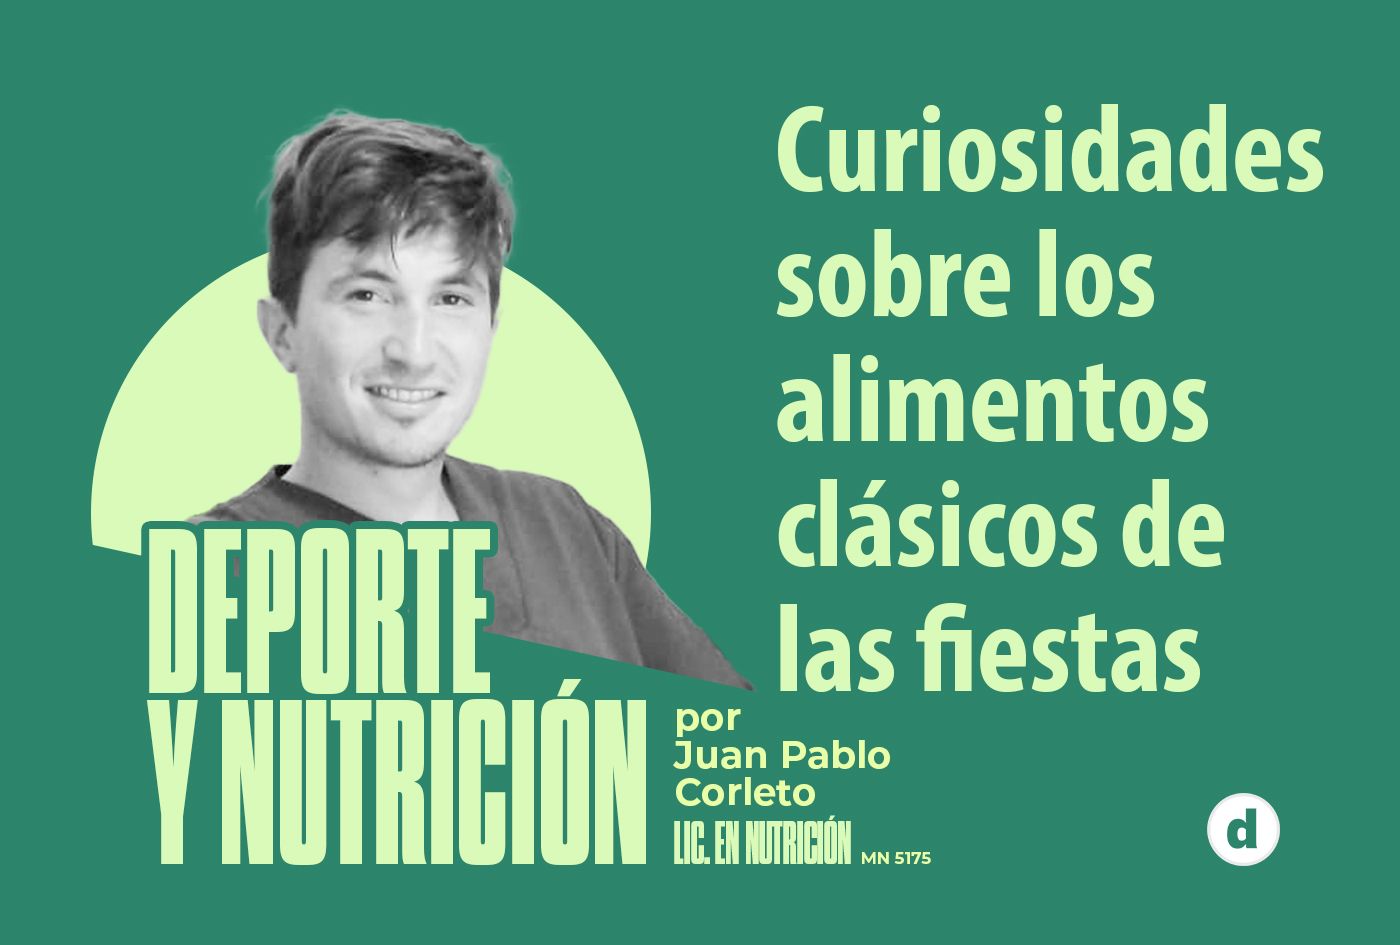 La columna del nutricionista Juan Pablo Corleto: “Curiosidades sobre los alimentos clásicos de las fiestas”